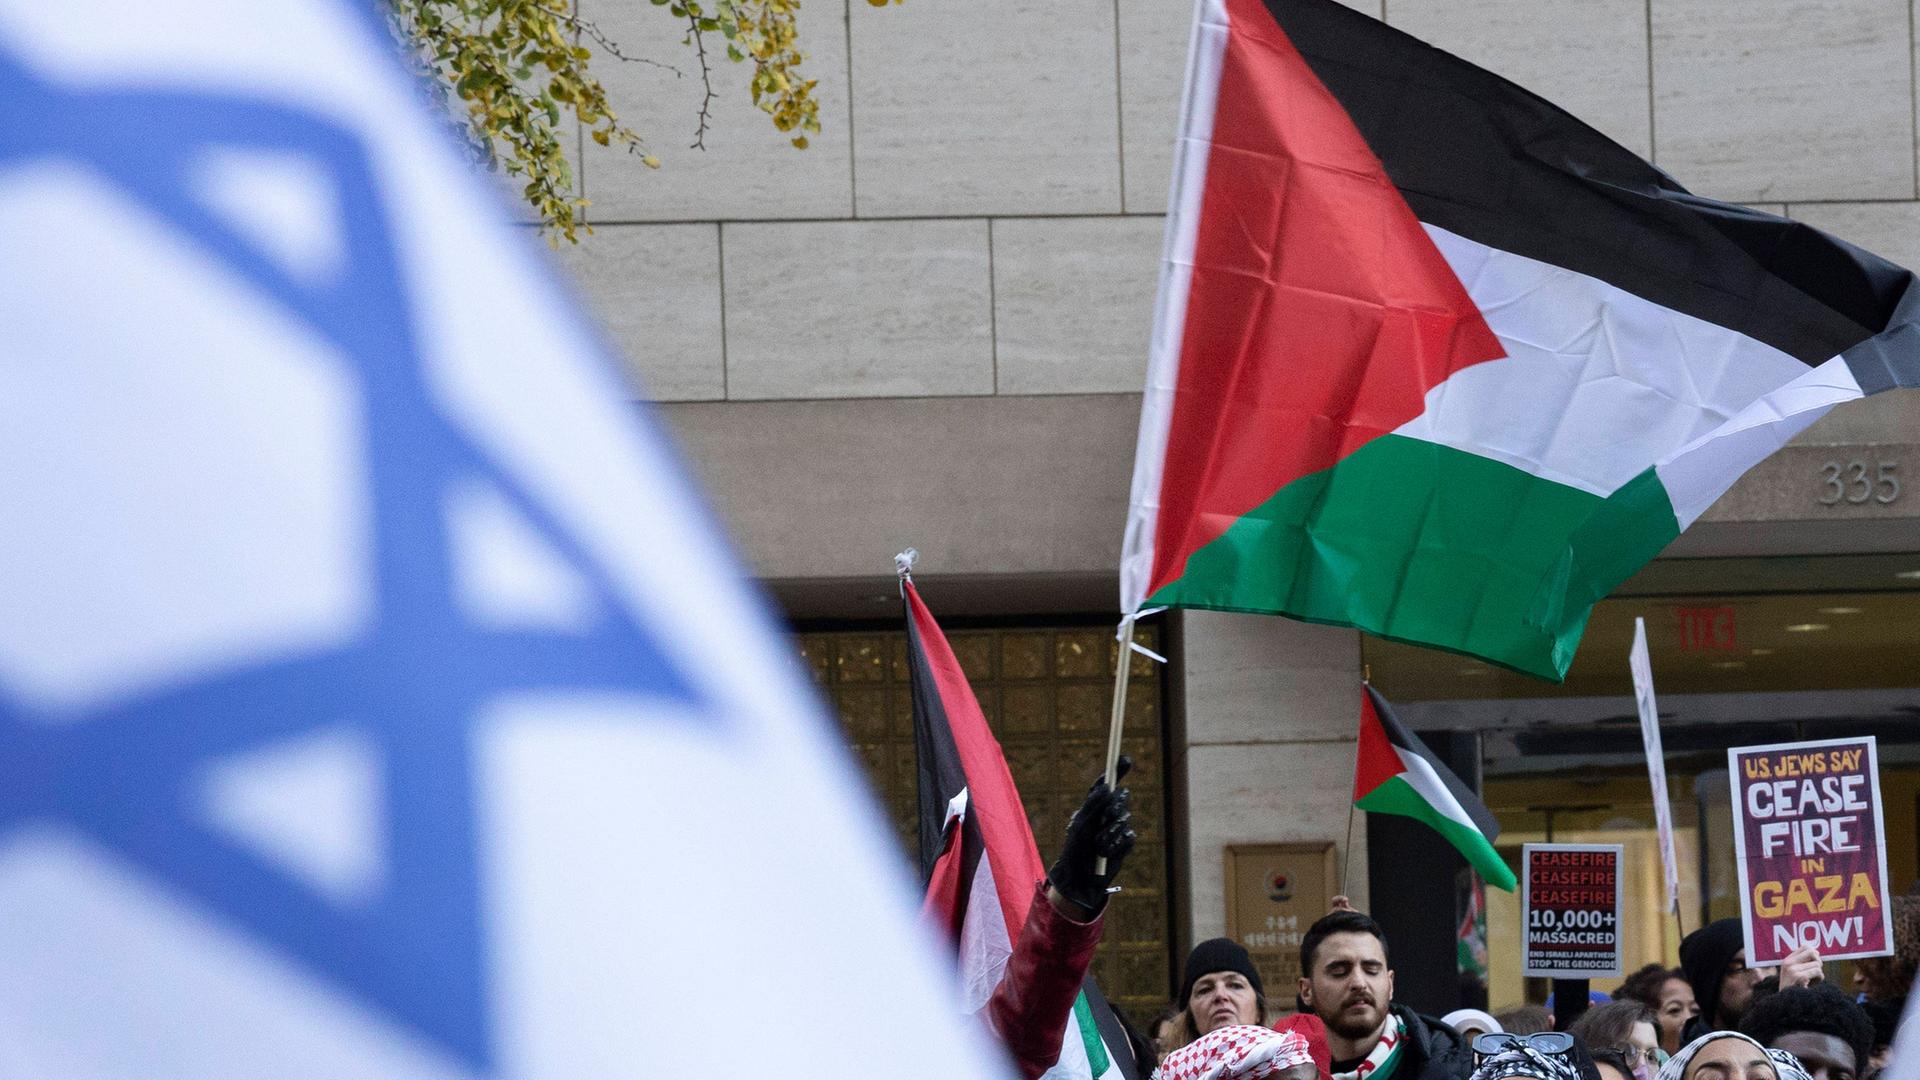 Dicht gedrängte Menschengruppen mit palästinensischen und israelischen Flaggen